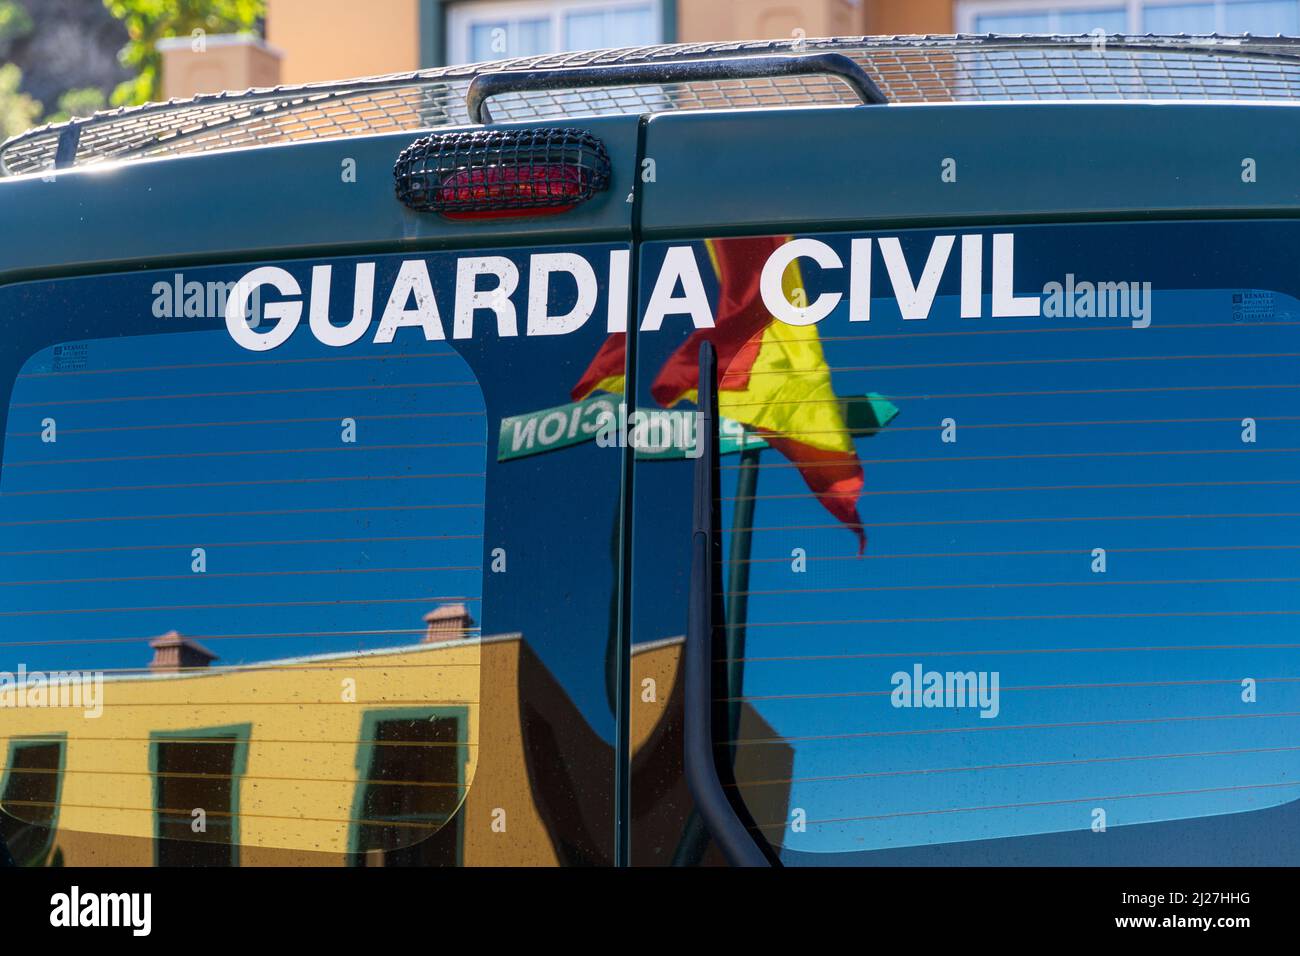 Scritta Guardia Civil con bandiera spagnola sul lunotto di un veicolo di emergenza Foto Stock